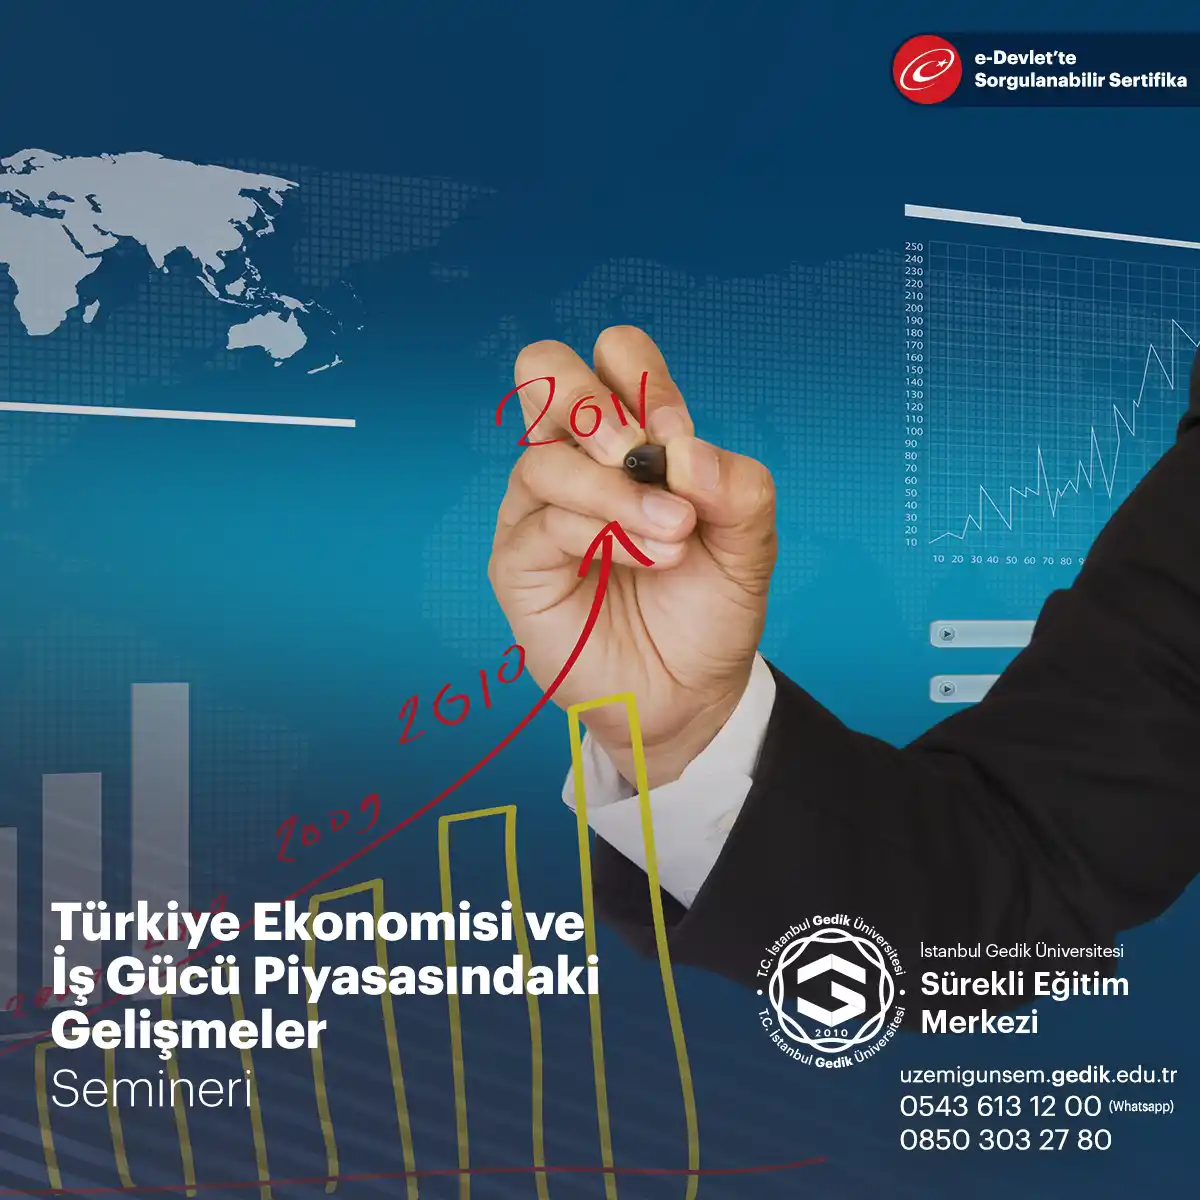 Türkiye ekonomisi son yıllarda değişiklikler yaşamış ve işgücü piyasasındaki gelişmeler de bu değişimi etkileyen önemli faktörlerden biri haline gelmiştir.